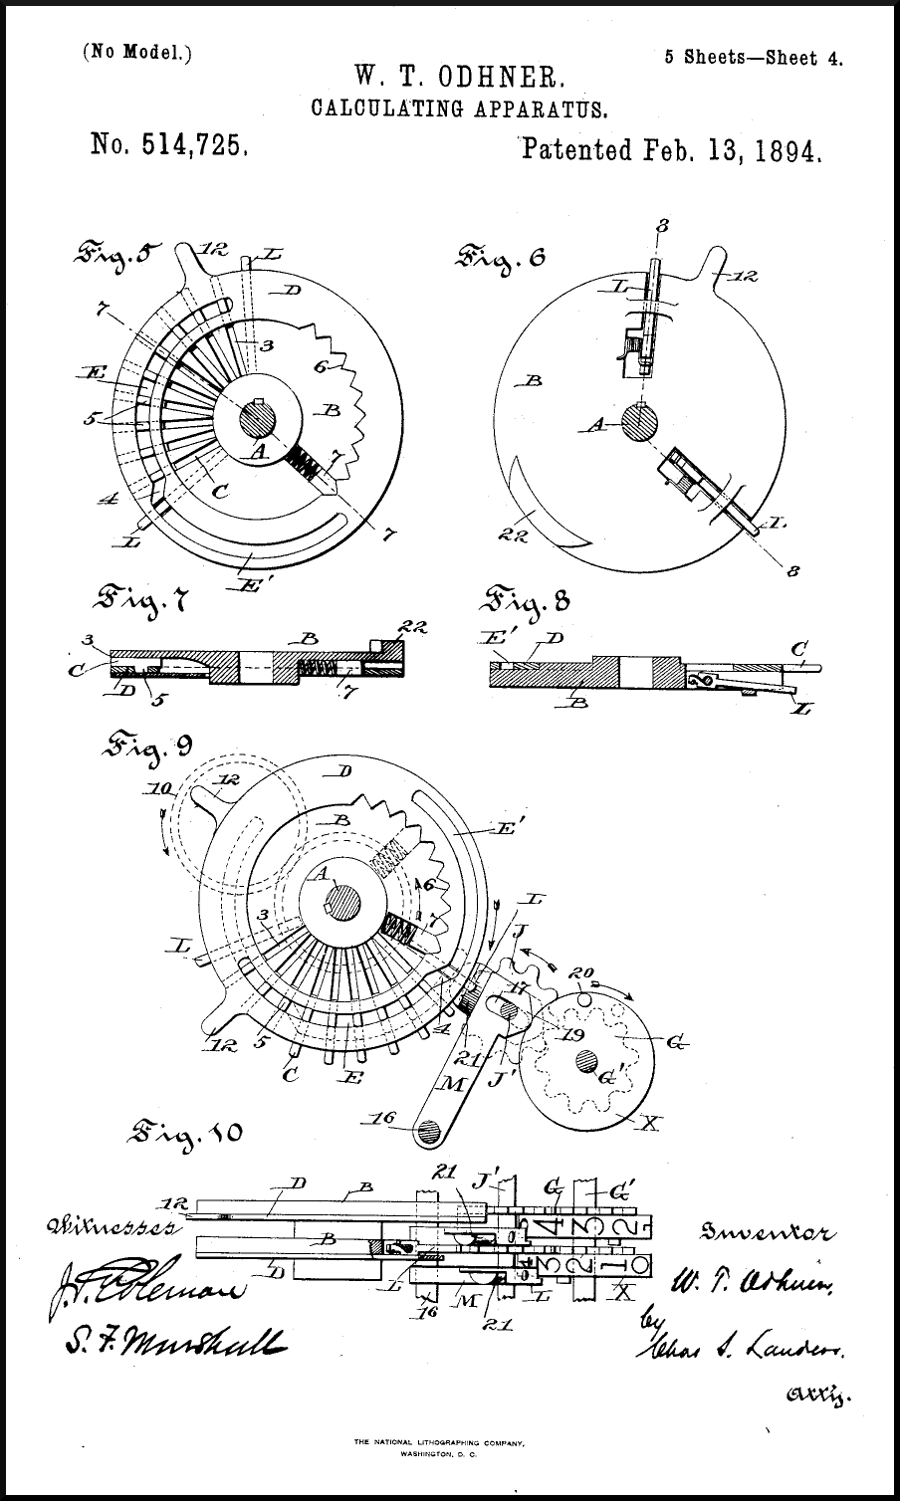 Vyobrazení mechanismu z patentové přihlášky